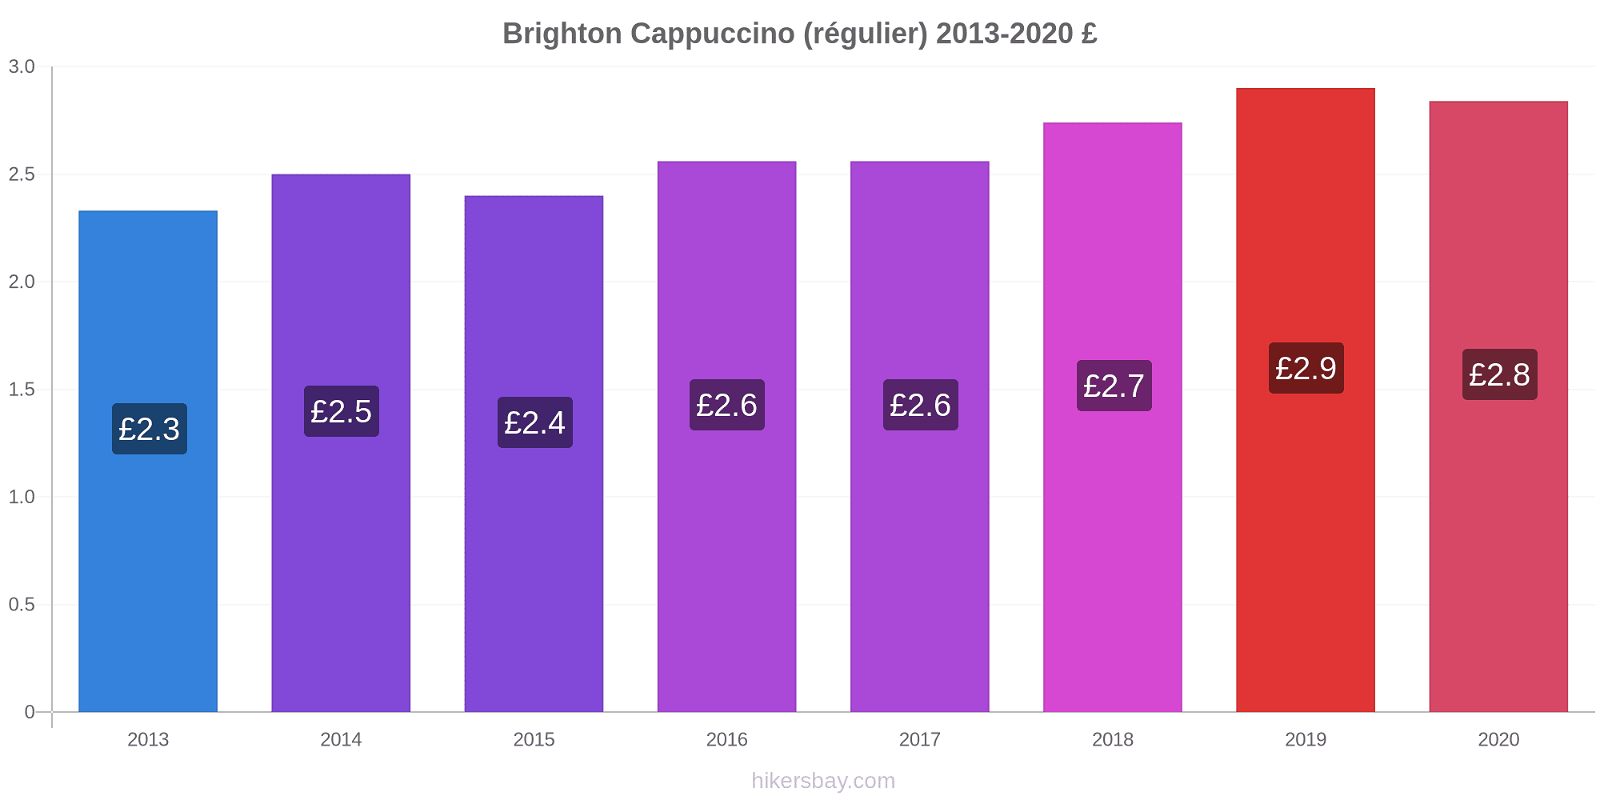 Brighton changements de prix Cappuccino (régulier) hikersbay.com